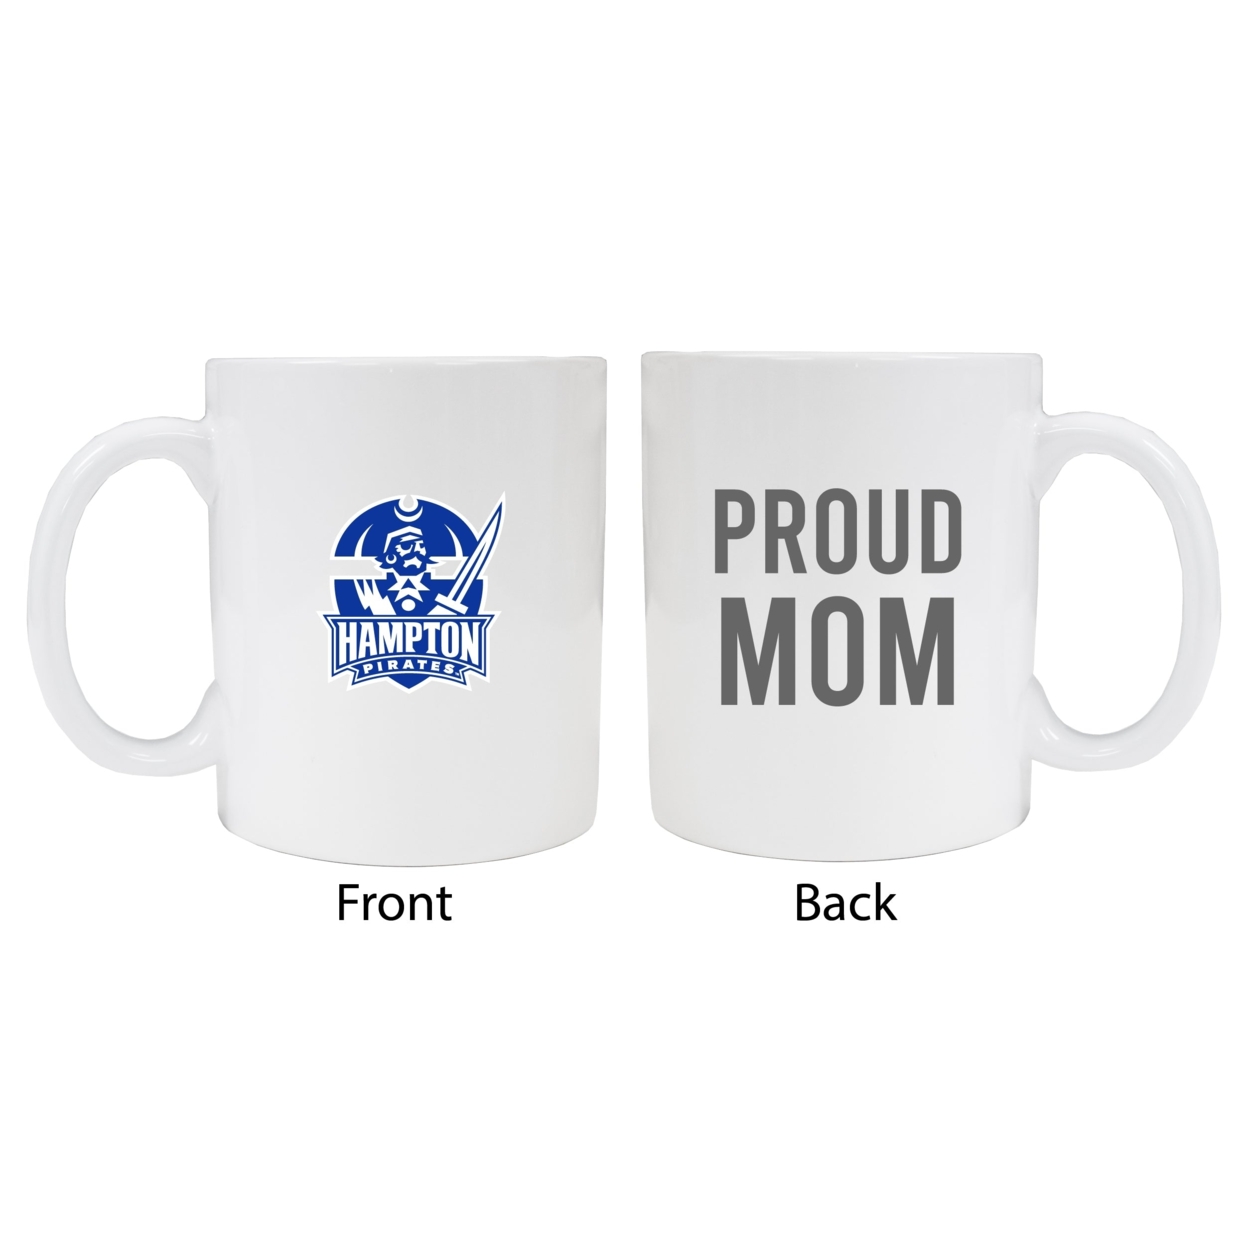 Hampton University Proud Mom Ceramic Coffee Mug - White